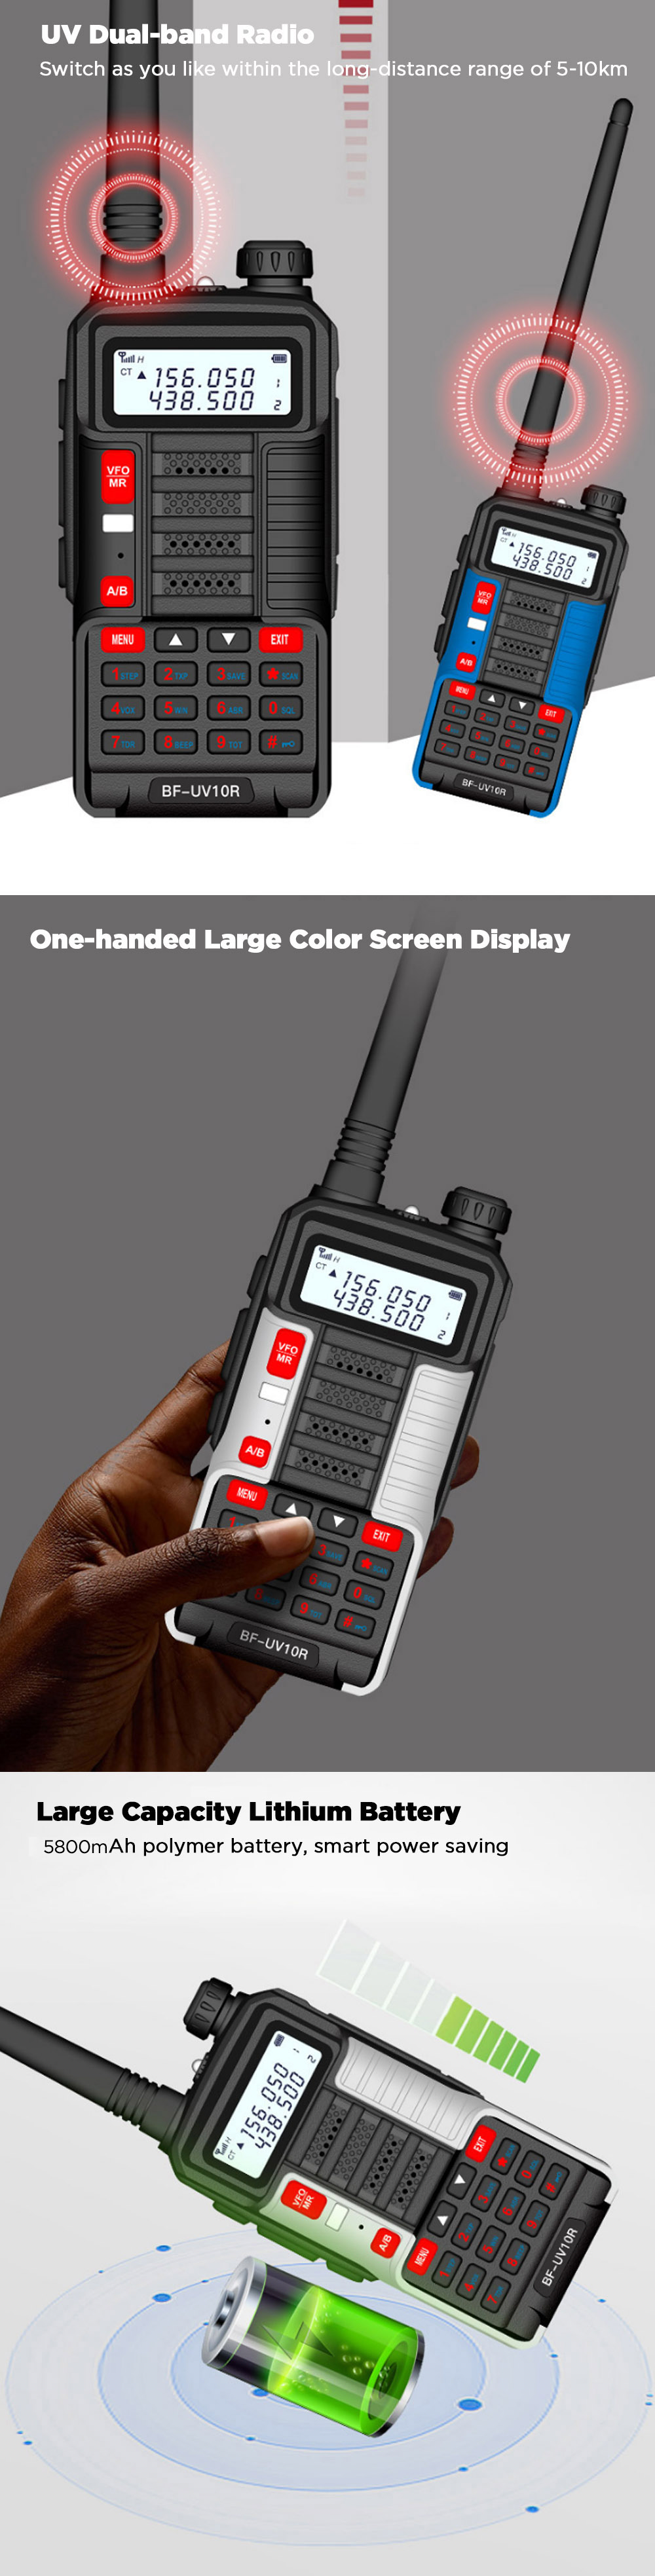 BAOFENG-BF-UV10R-Plus-10W-4800mAh-UV-Dual-Band-Two-way-Handheld-Radio-Black-Walkie-Talkie-128-Channe-1753474-3